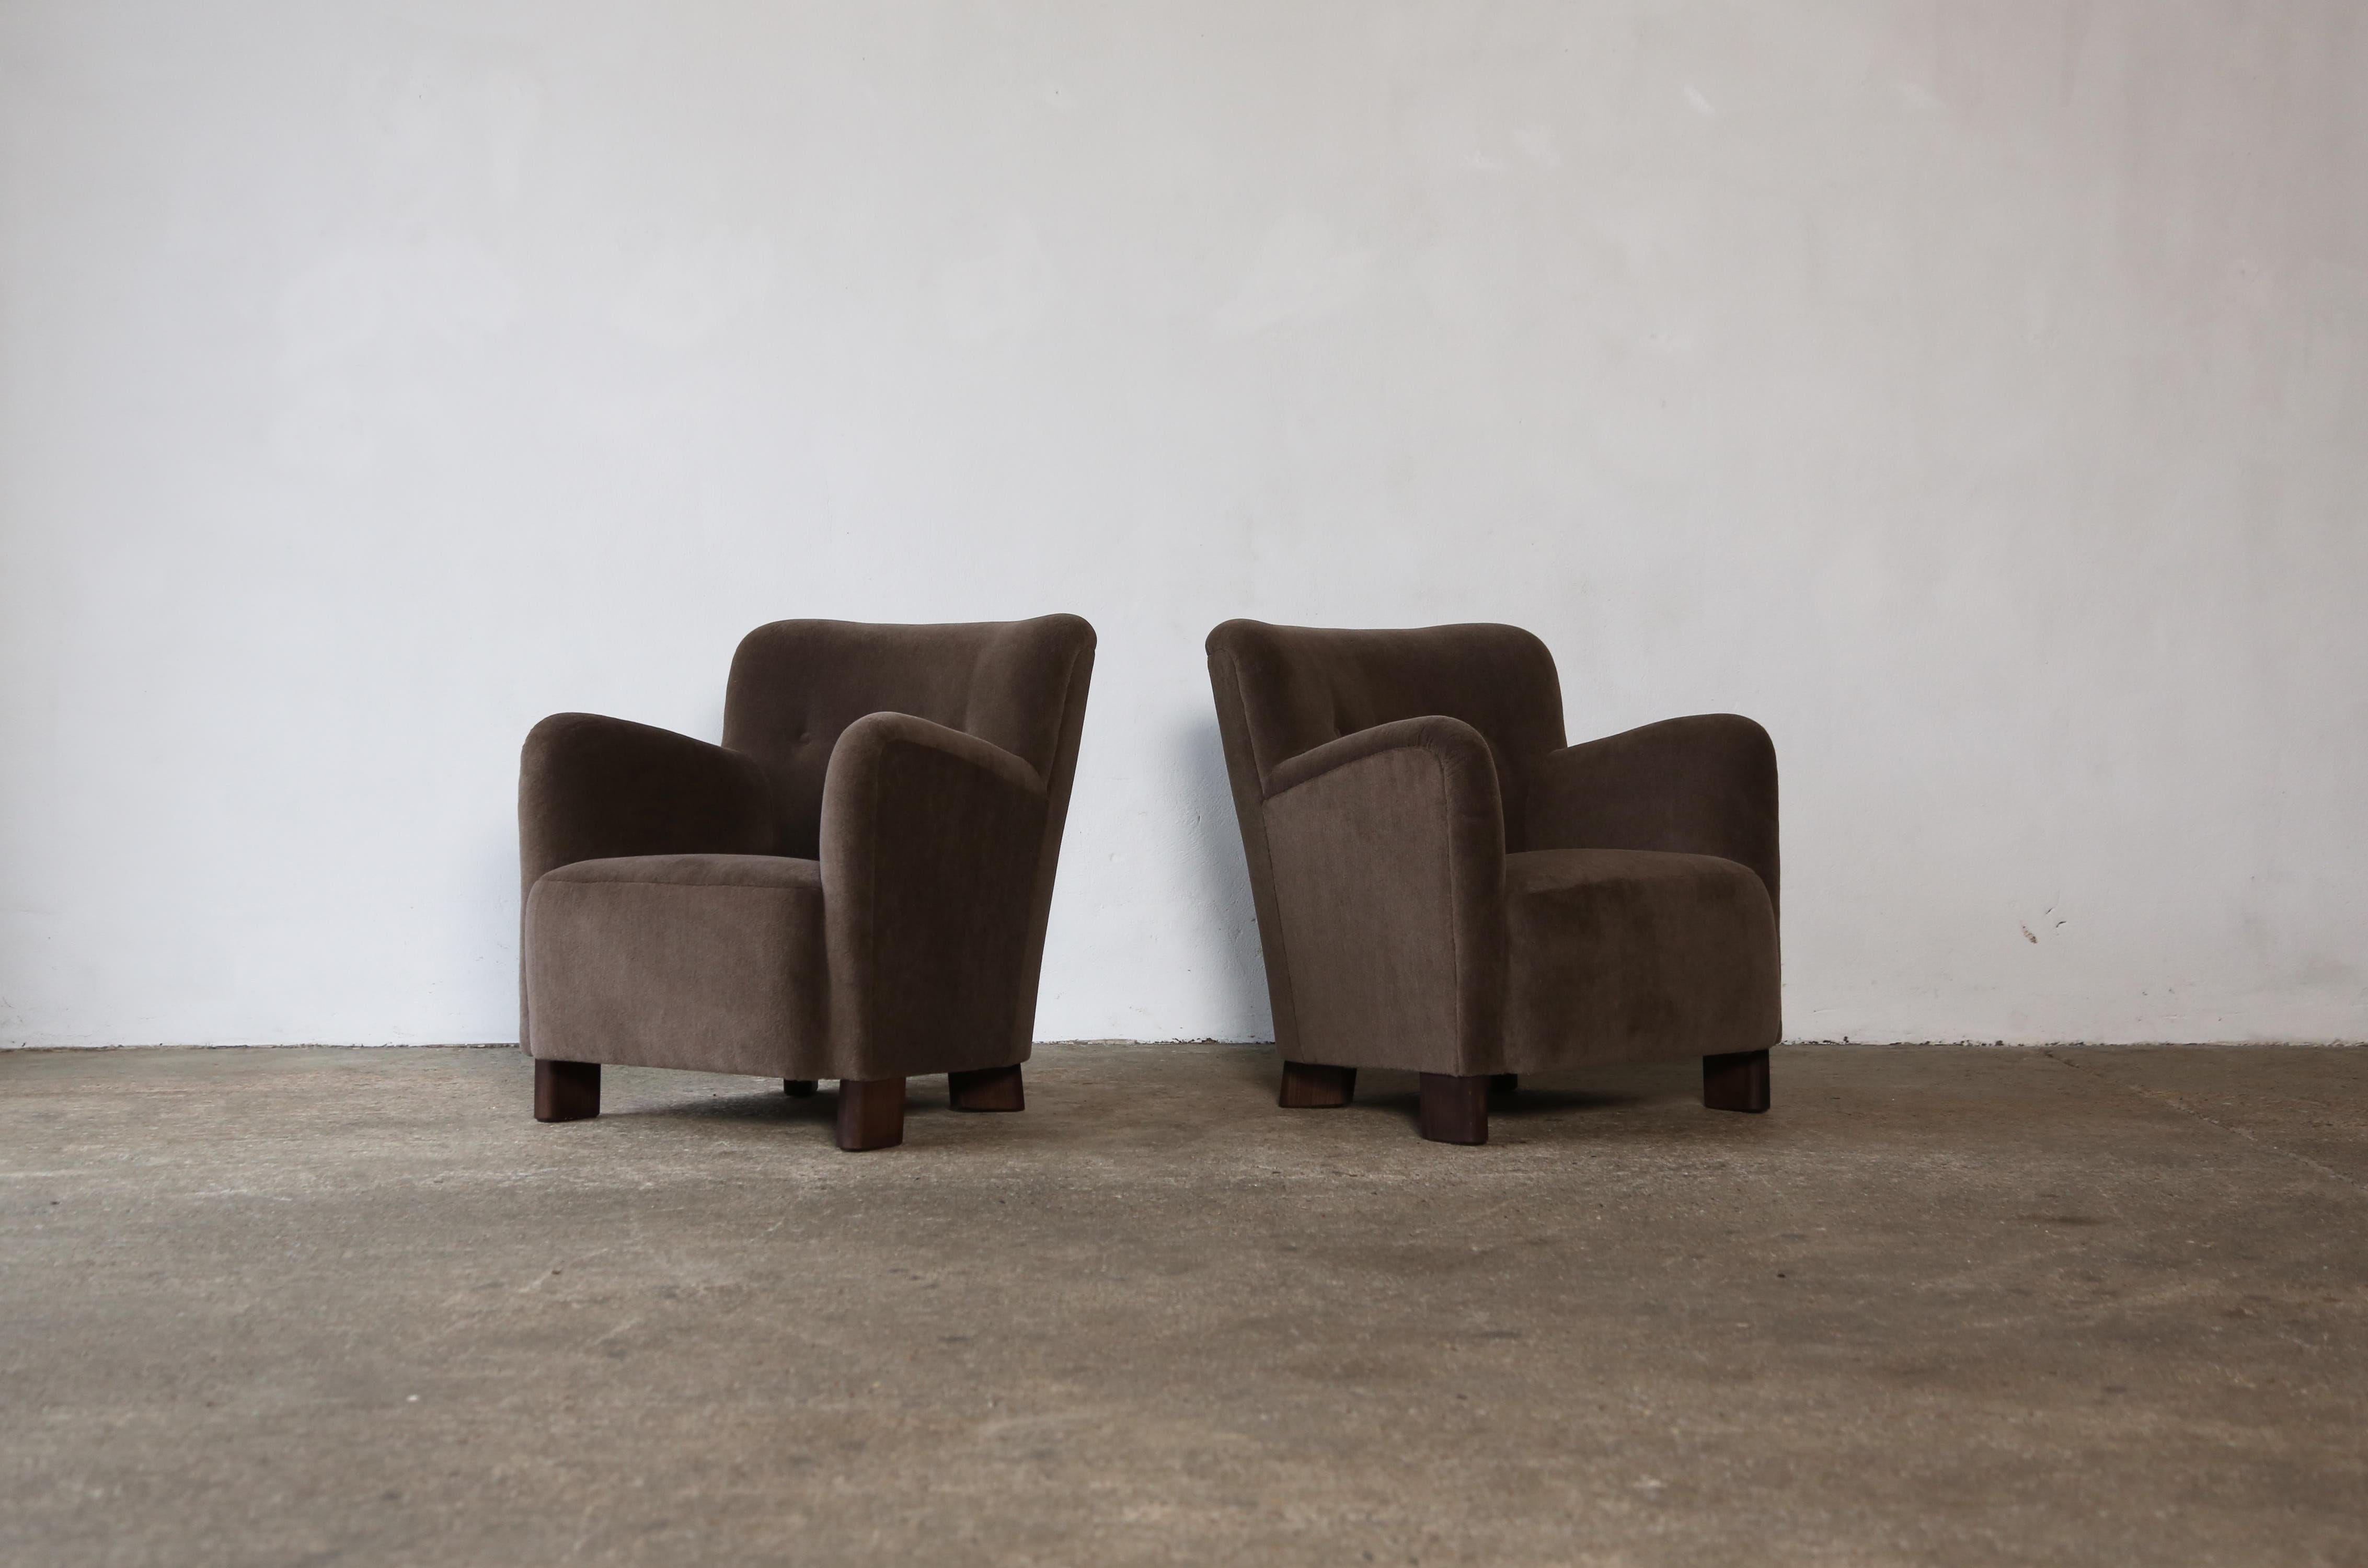 Une élégante paire de chaises longues modernes. Structure en hêtre fabriquée à la main, assise à ressorts et nouvellement recouverte d'un tissu en pure laine d'alpaga, doux et de première qualité.  Expédition rapide dans le monde entier.



